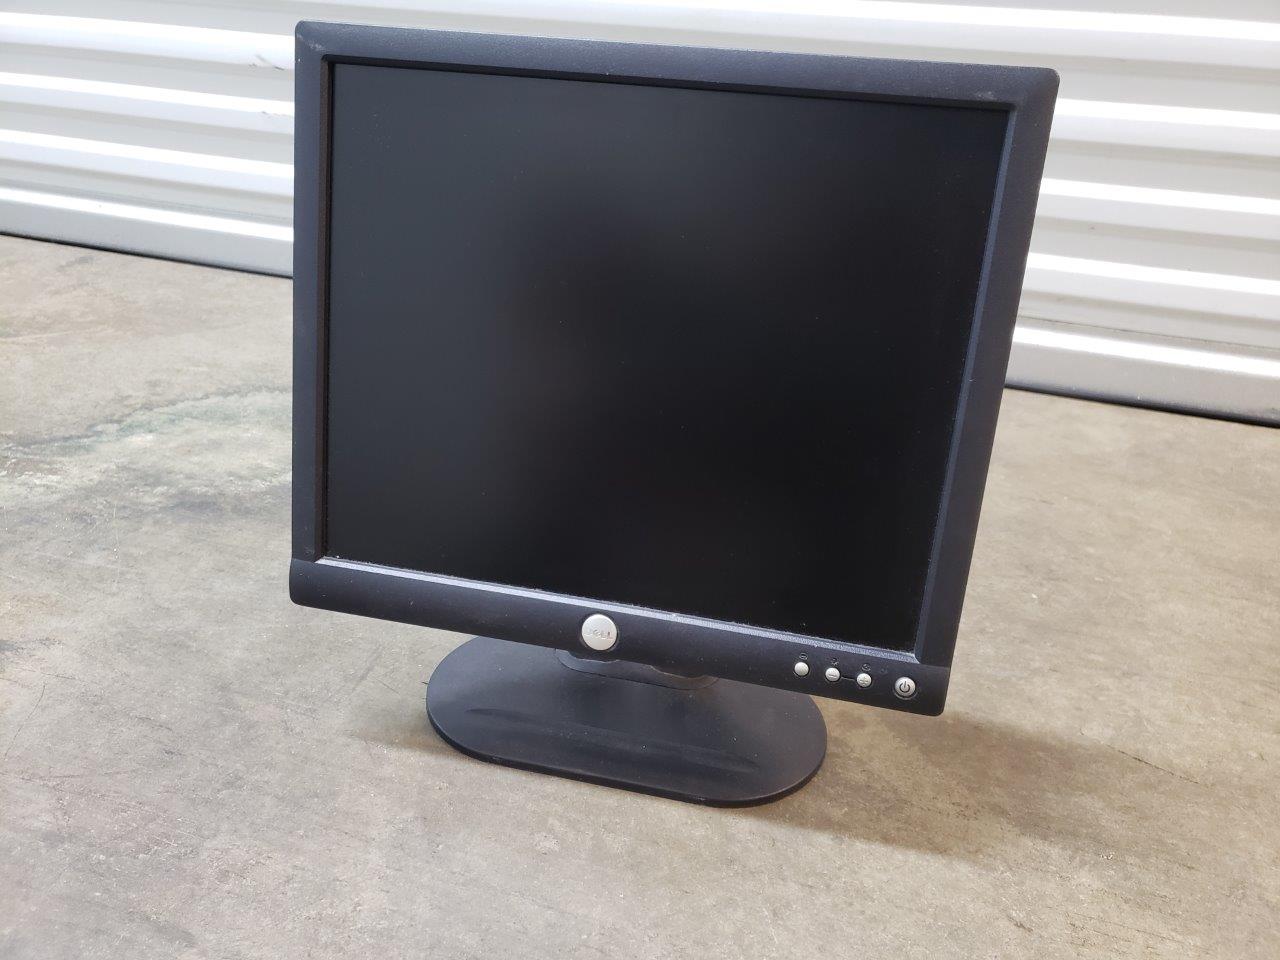 Dell E173FPf 17 inch Flat Panel Color Monitor